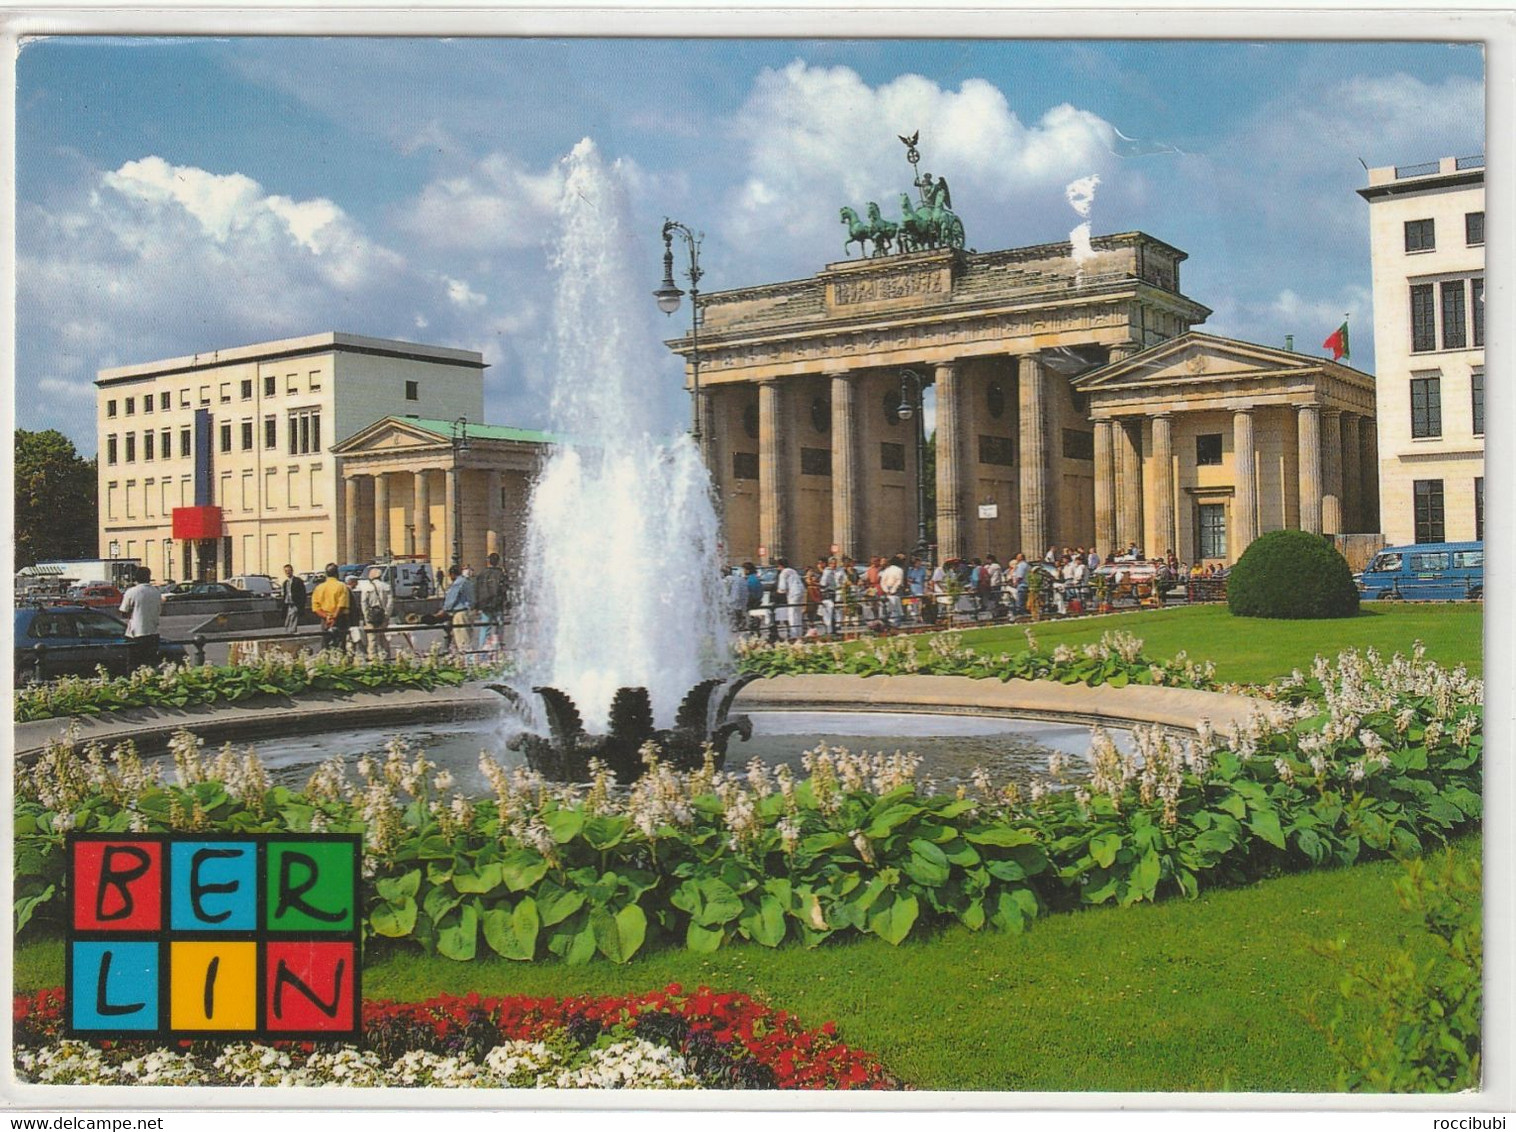 Berlin - Brandenburger Deur